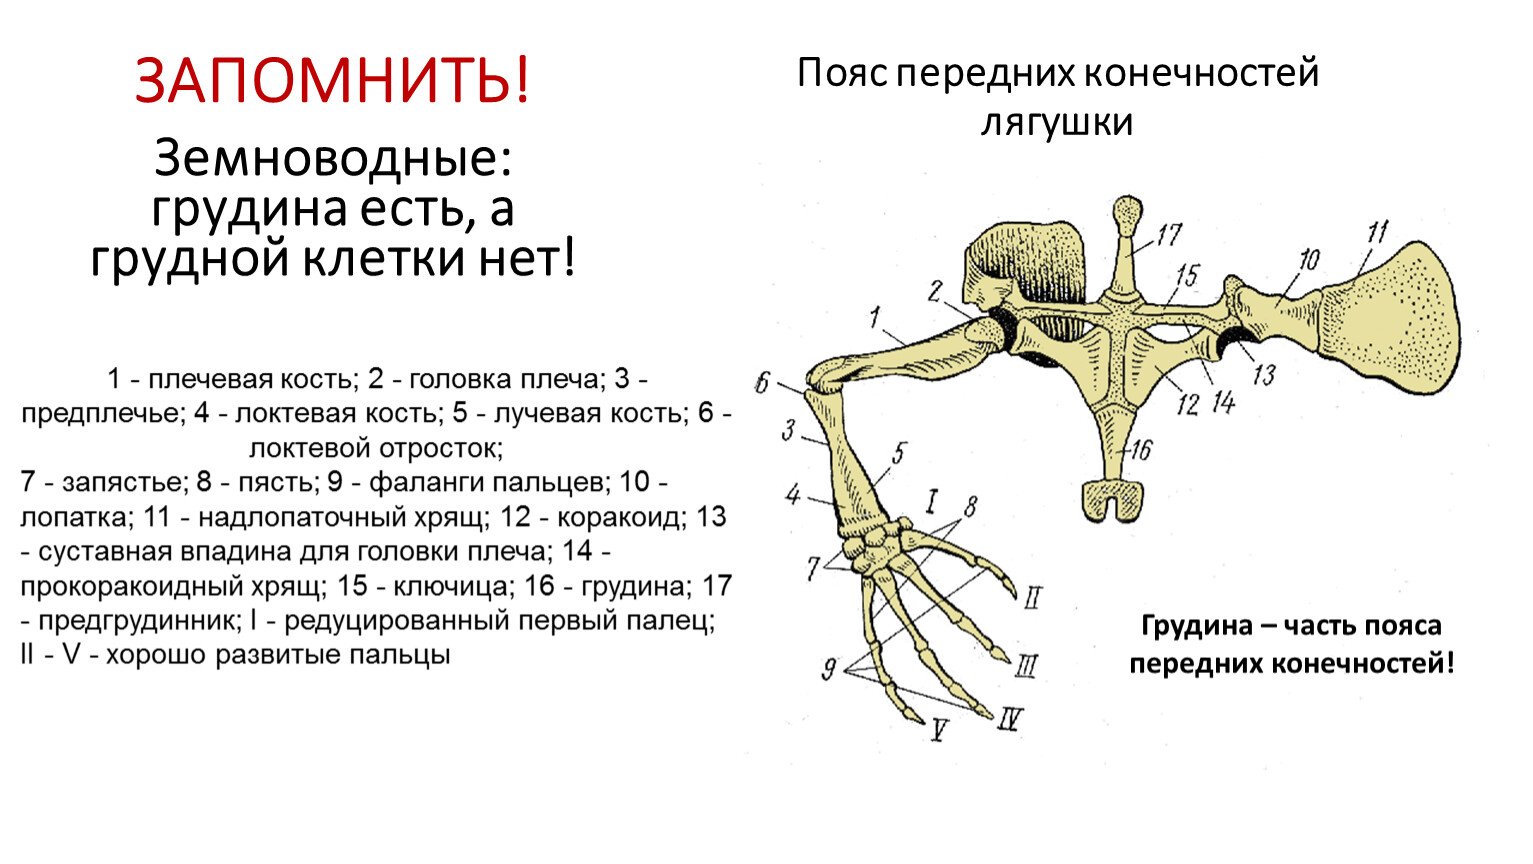 Скелет поясов конечностей лягушки. Строение поясов конечностей лягушки. Кости пояса верхних конечностей лягушки схема. Скелет пояса верхних конечностей у лягушки. Пояс верхних конечностей плечевой пояс лягушки.